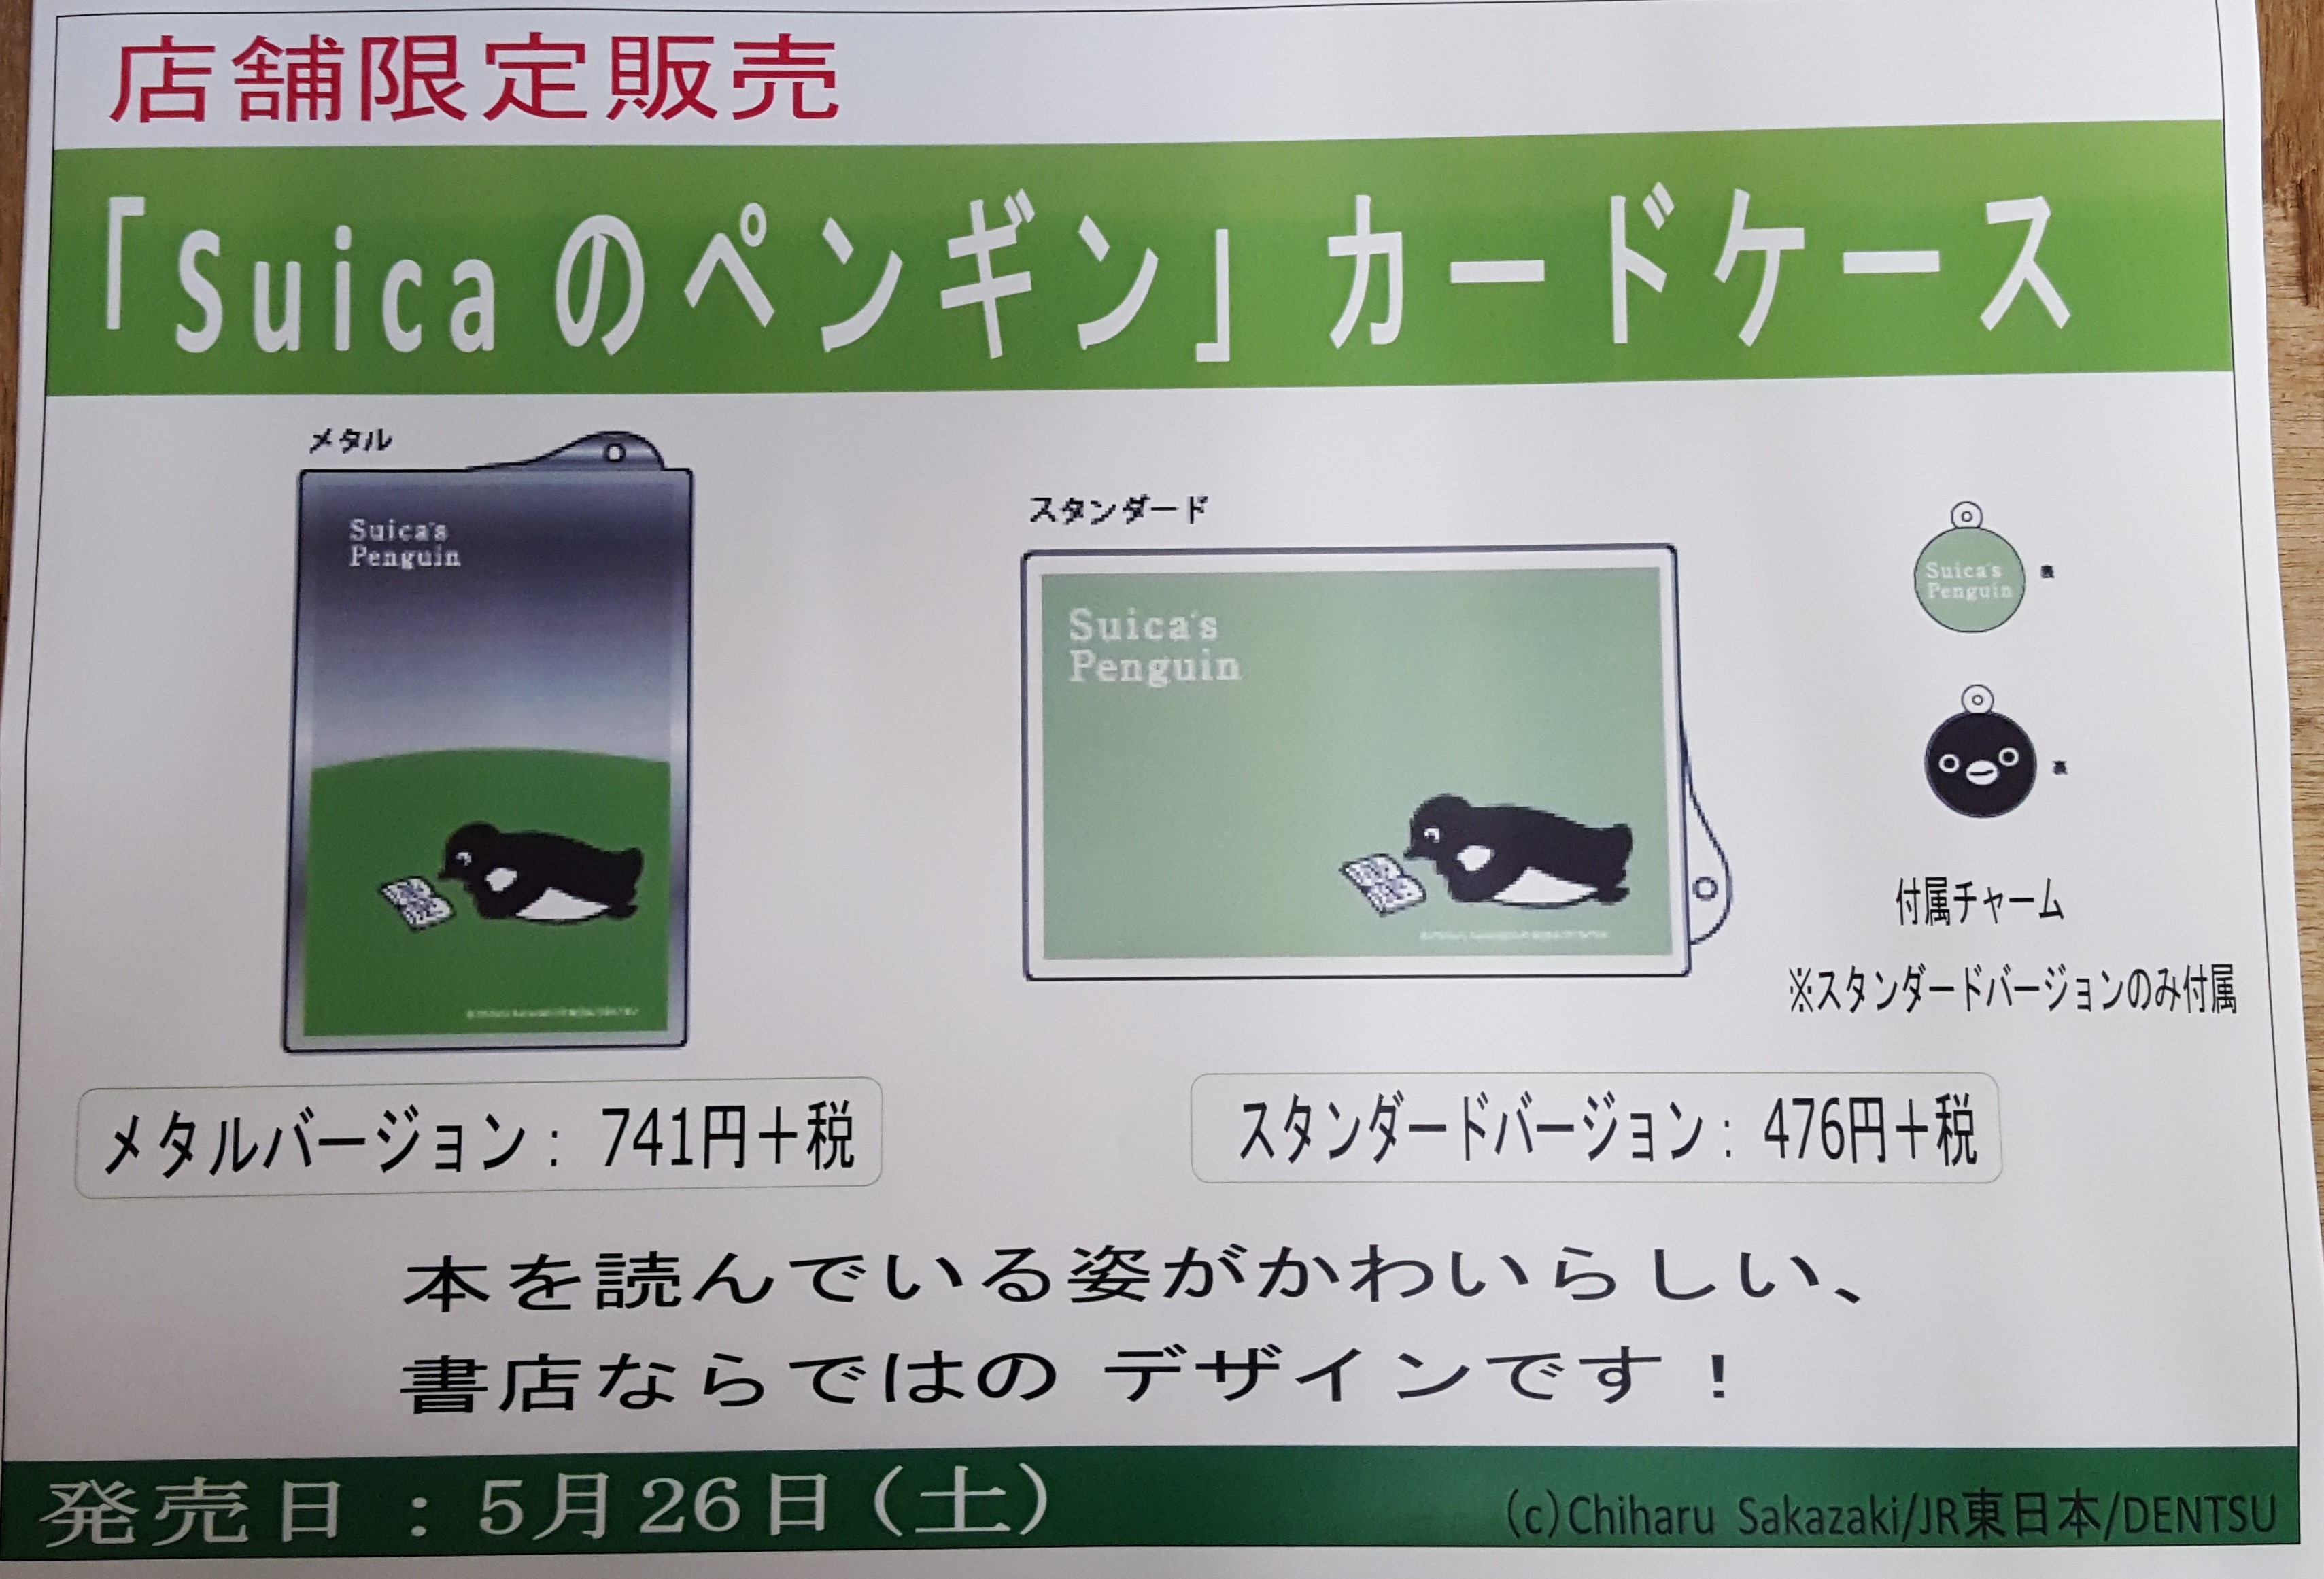 書泉限定 Suicaのペンギンカードケース発売決定 芳林堂書店